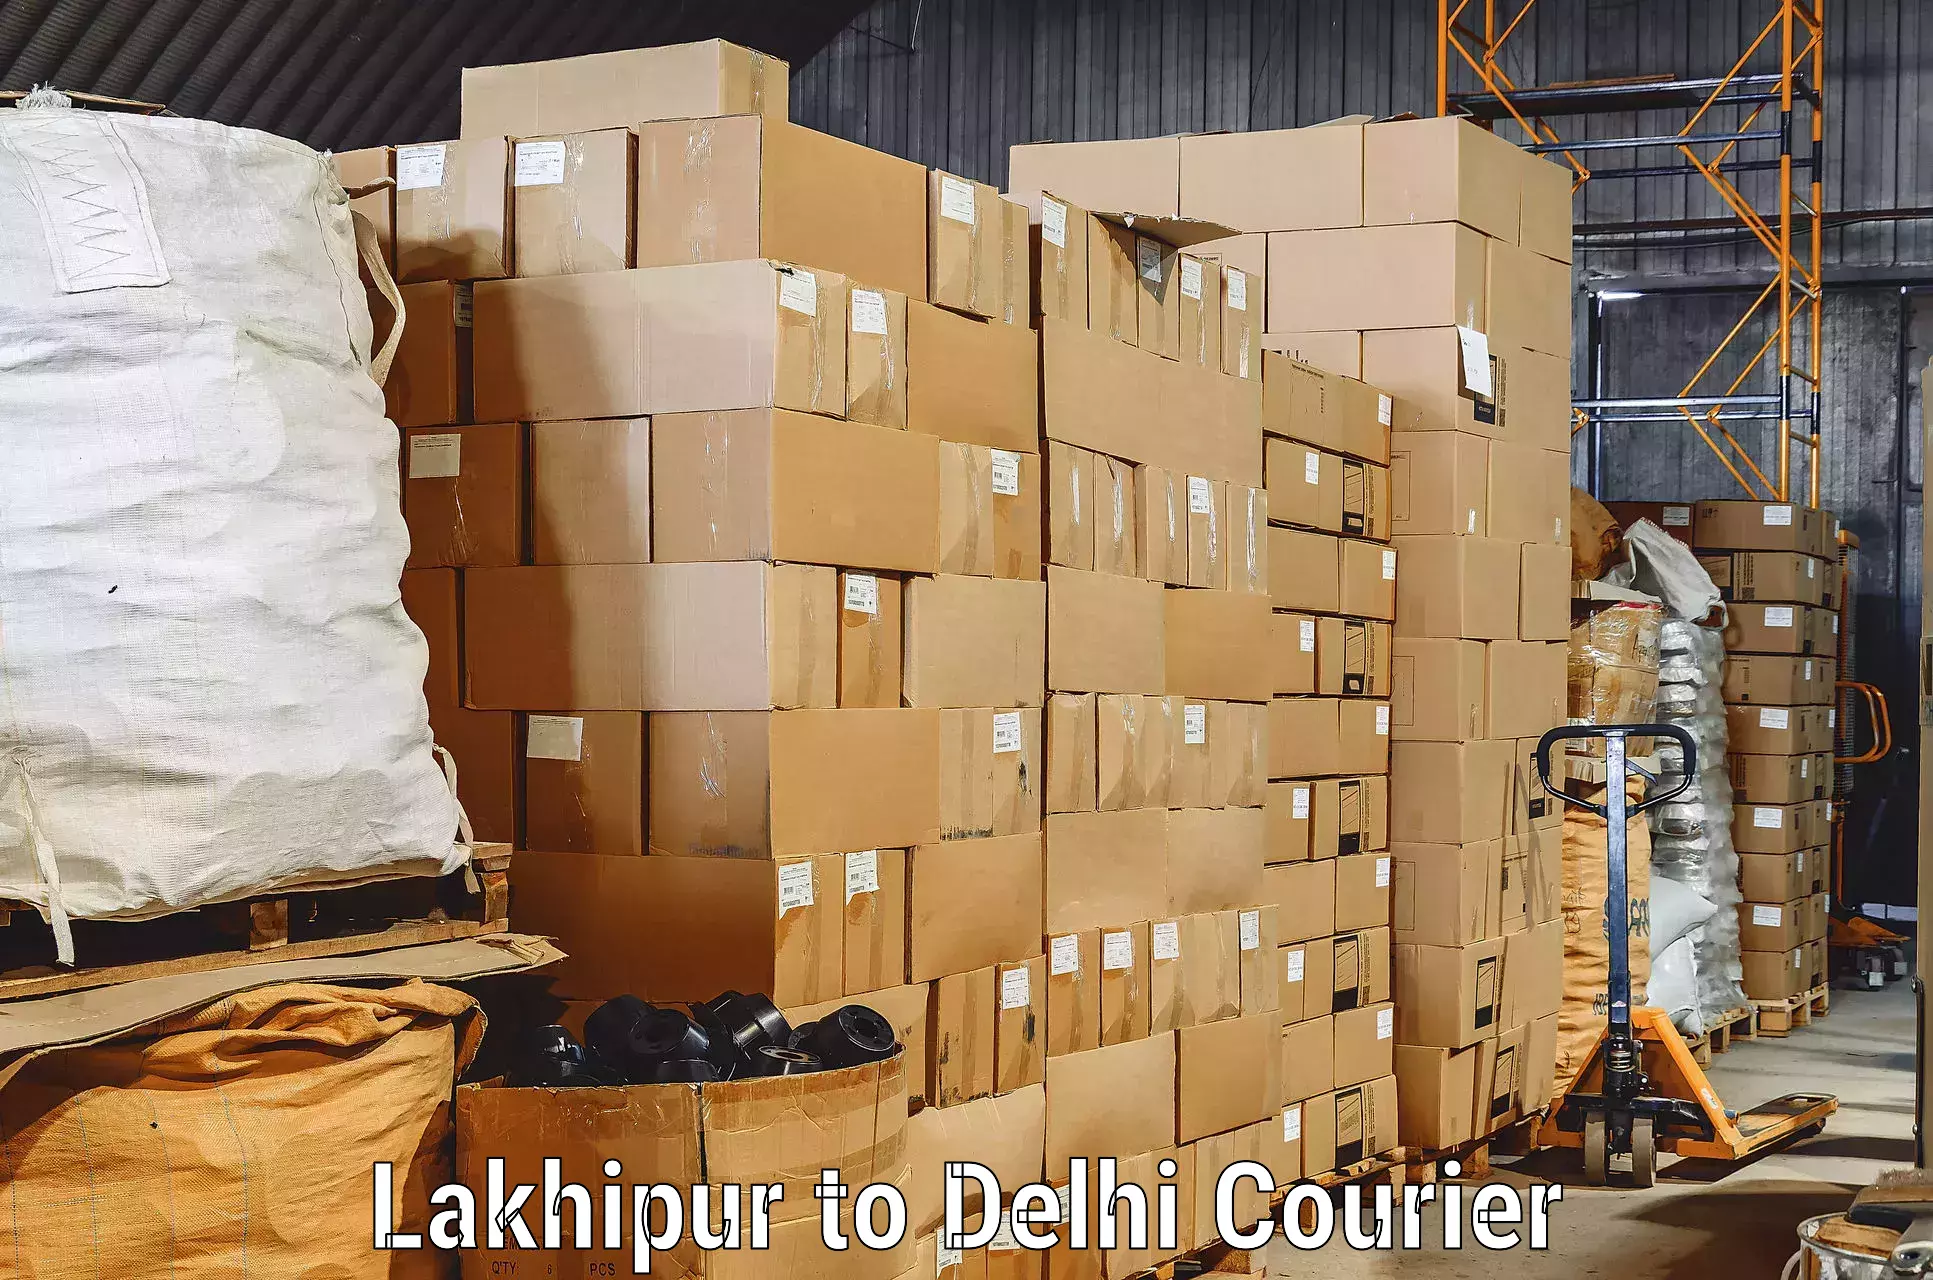 Furniture moving experts Lakhipur to Burari